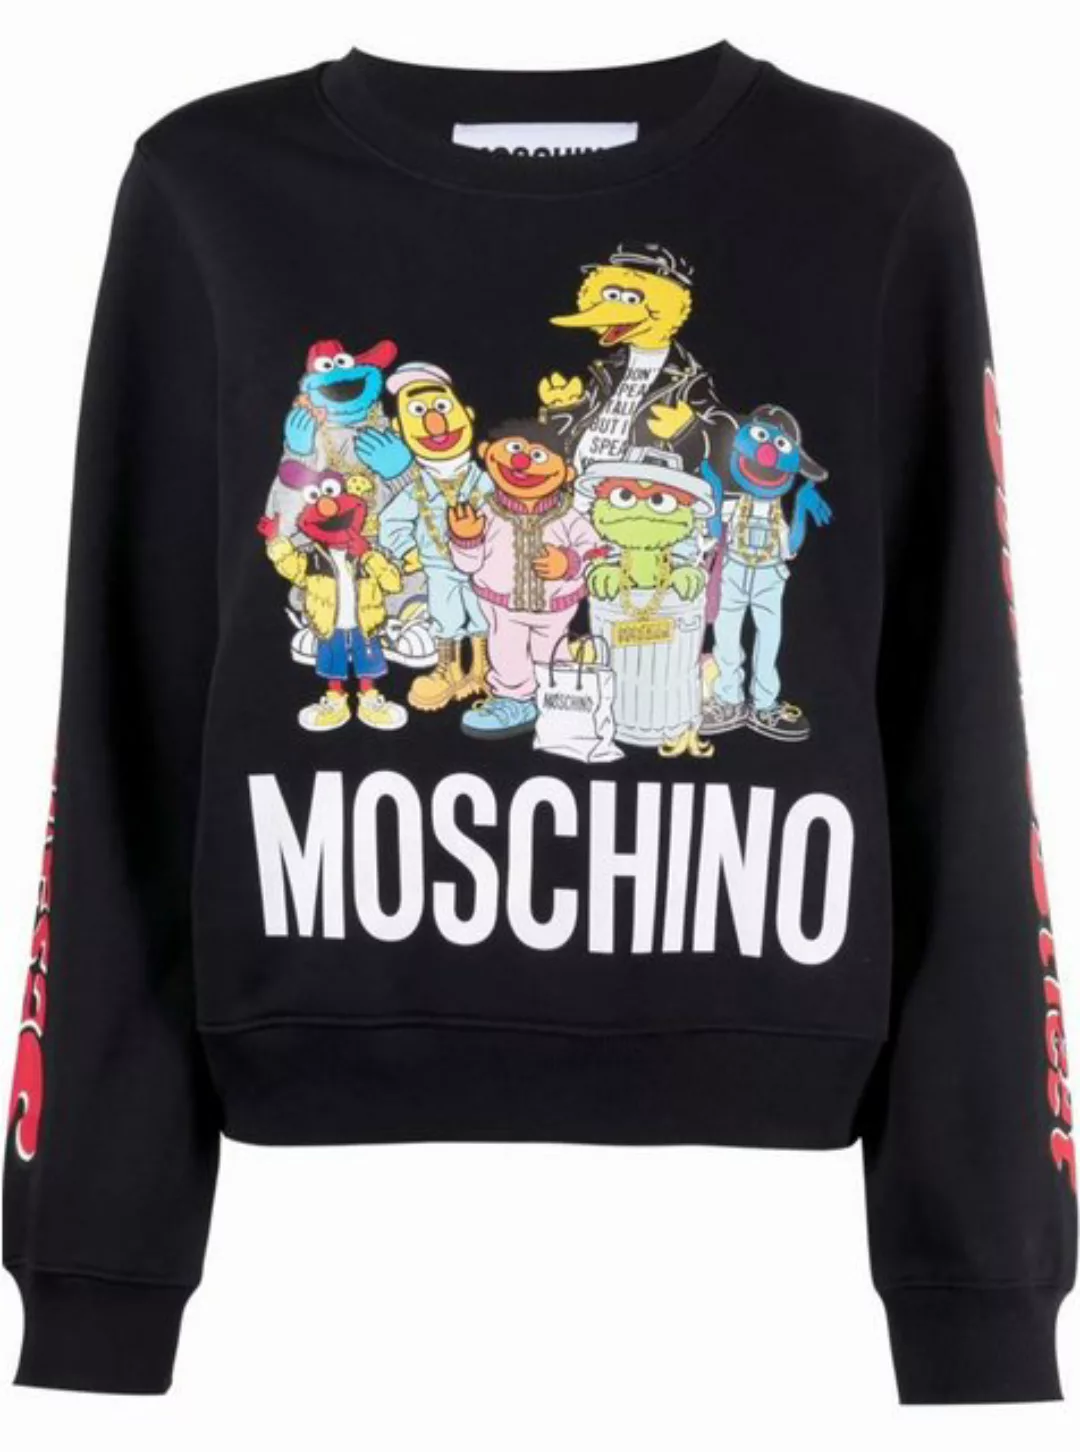 Moschino Sweatshirt X SESAME STREET Muppets Sweatshirt Sweater Terry Pulli günstig online kaufen